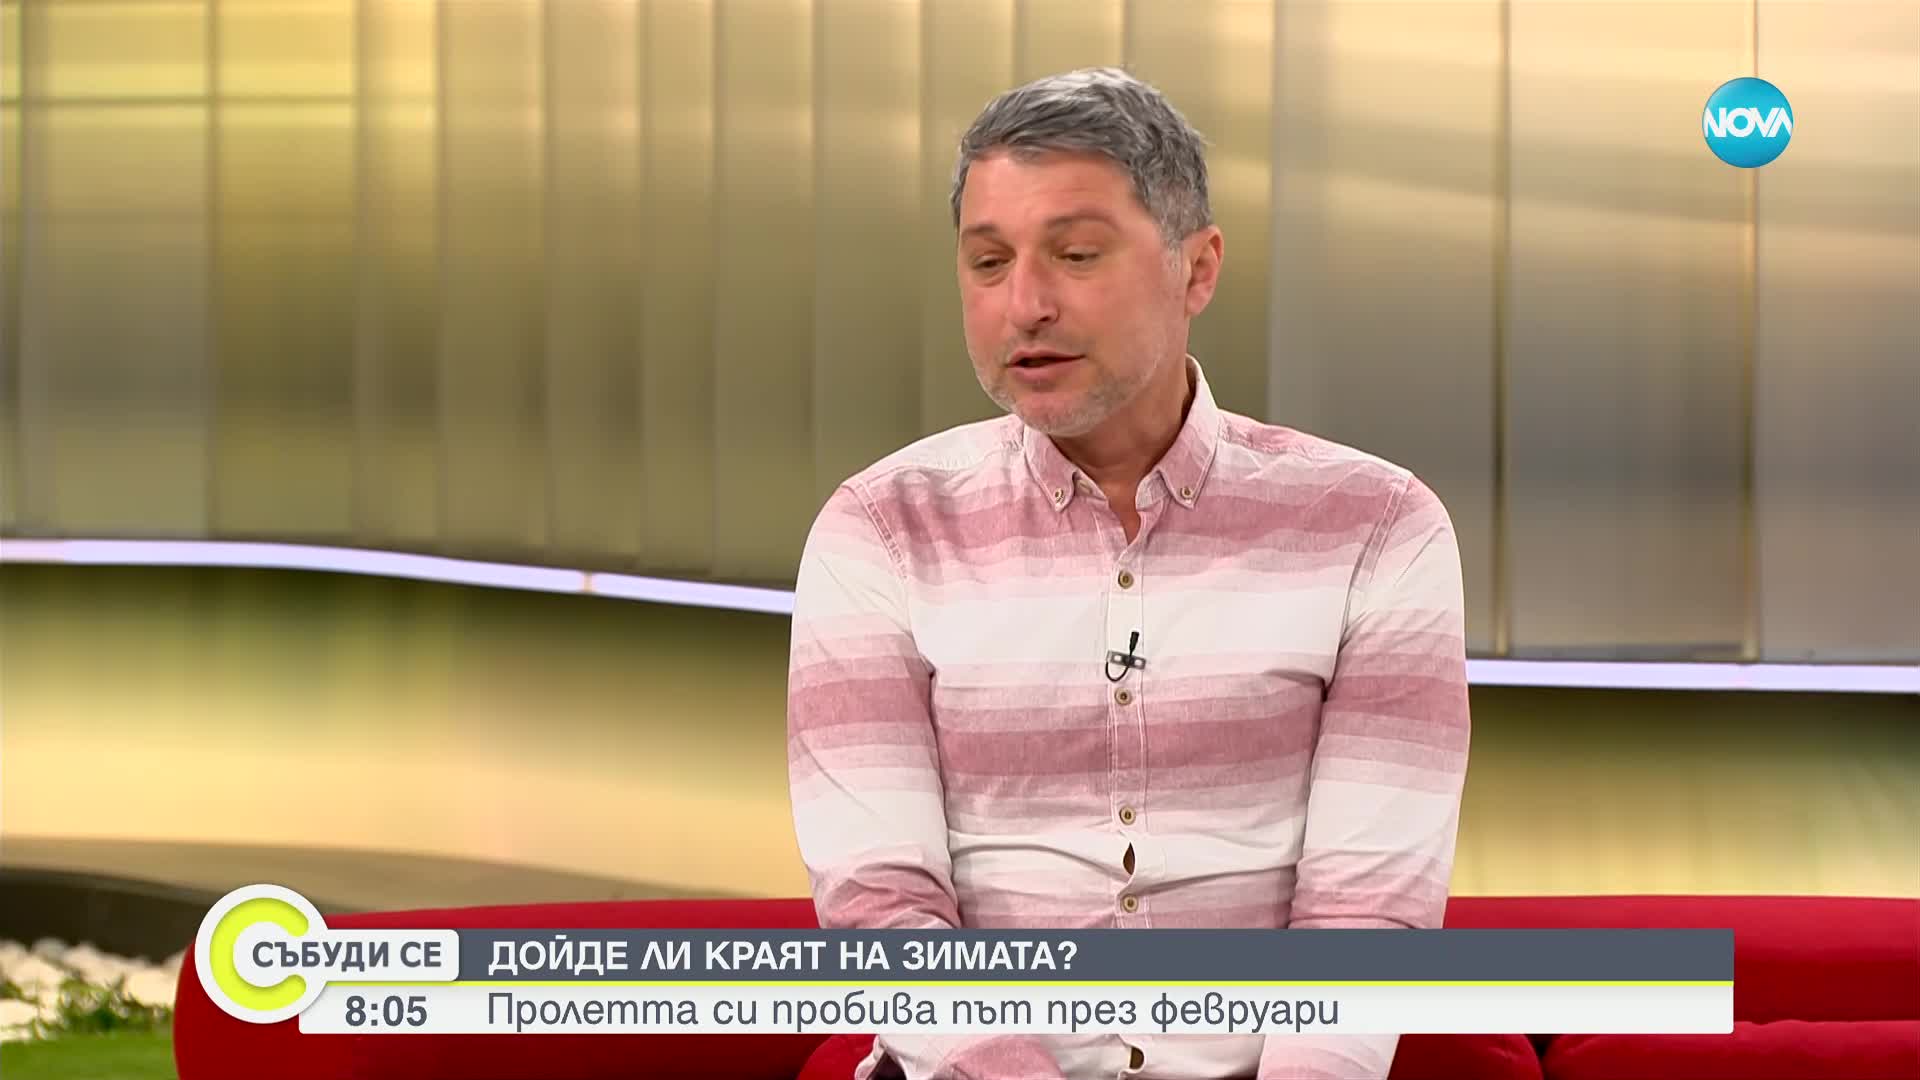 Симеон Матев: Тази зима най-вероятно ще е в топ 3 на най-топлите за България